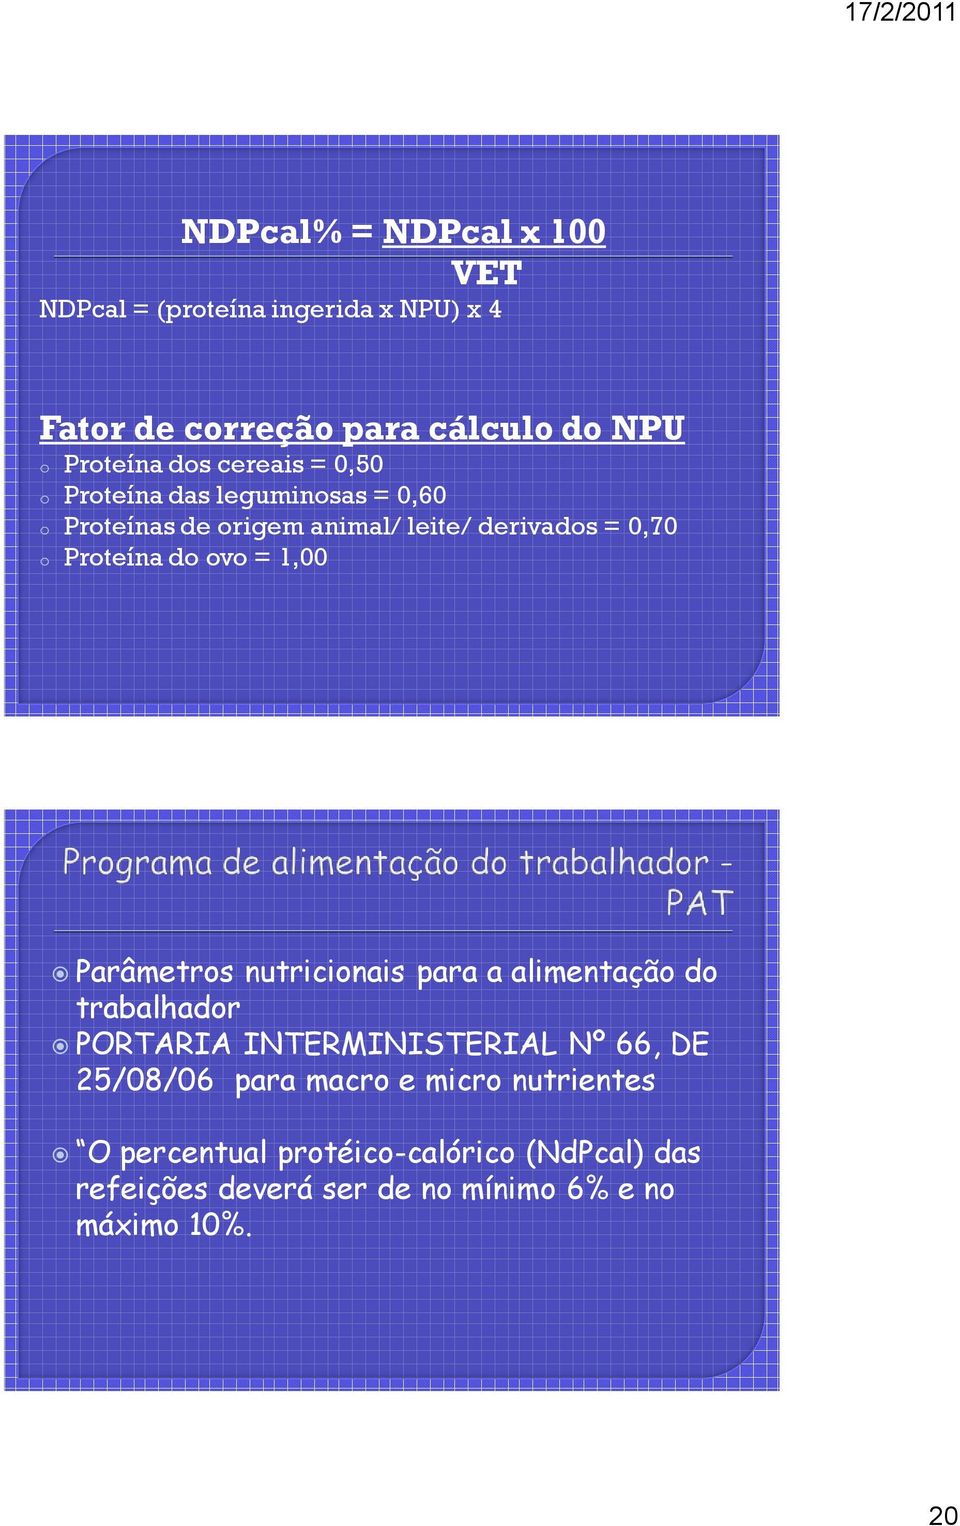 ovo = 1,00 Parâmetros nutricionais para a alimentação do trabalhador PORTARIA INTERMINISTERIAL Nº 66, DE 25/08/06 para